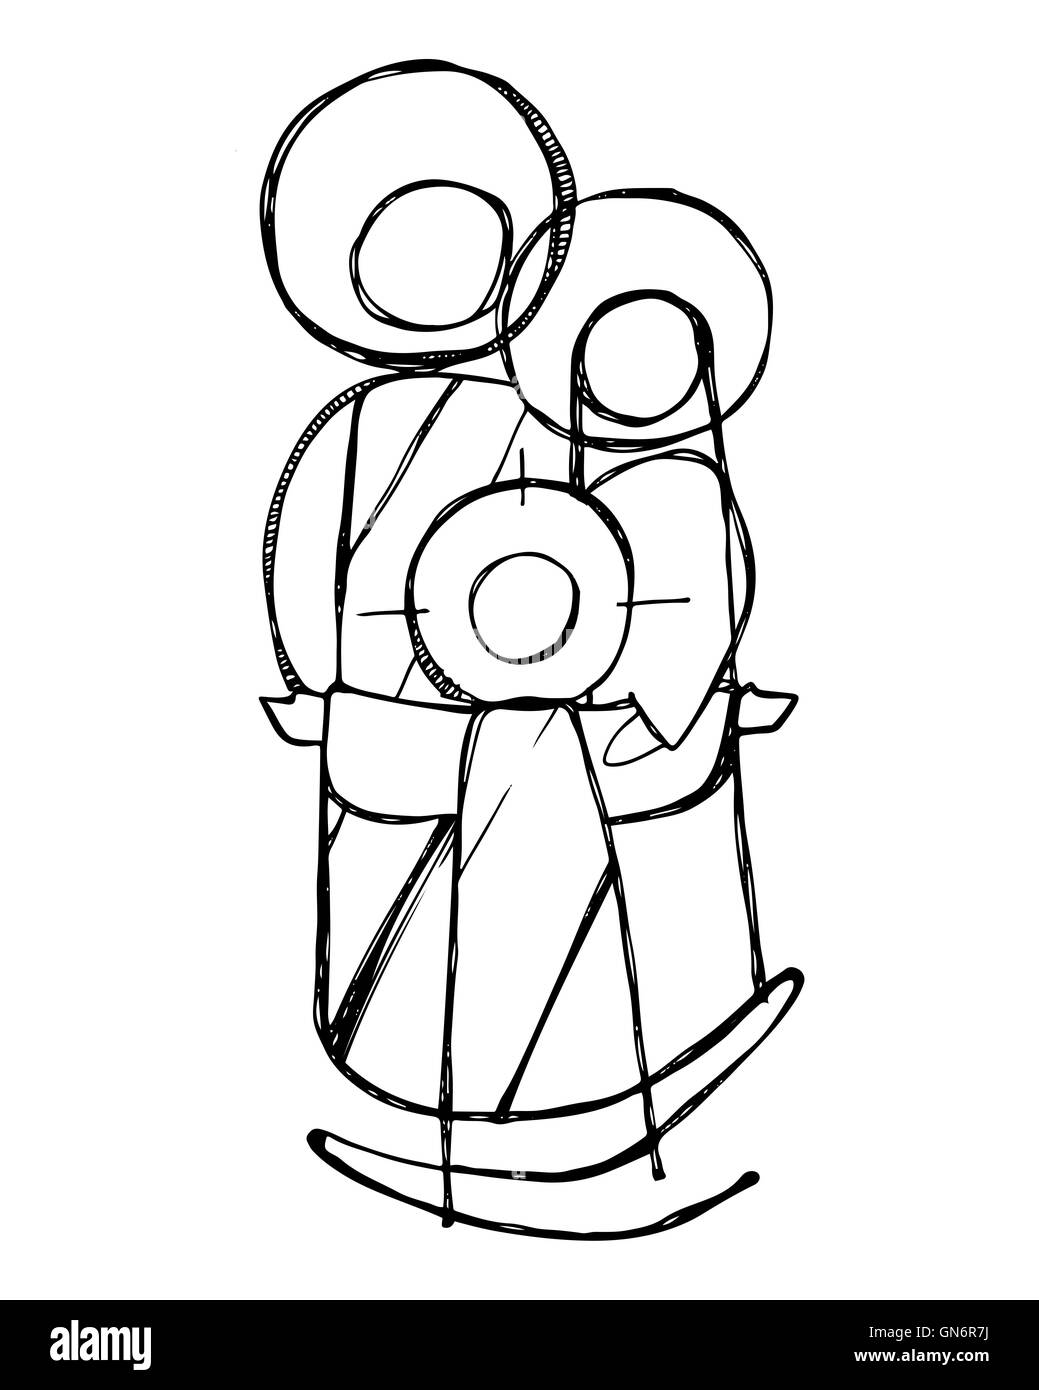 Illustration à la main ou d'un dessin de Jésus Sainte Famille dans un style minimaliste Banque D'Images